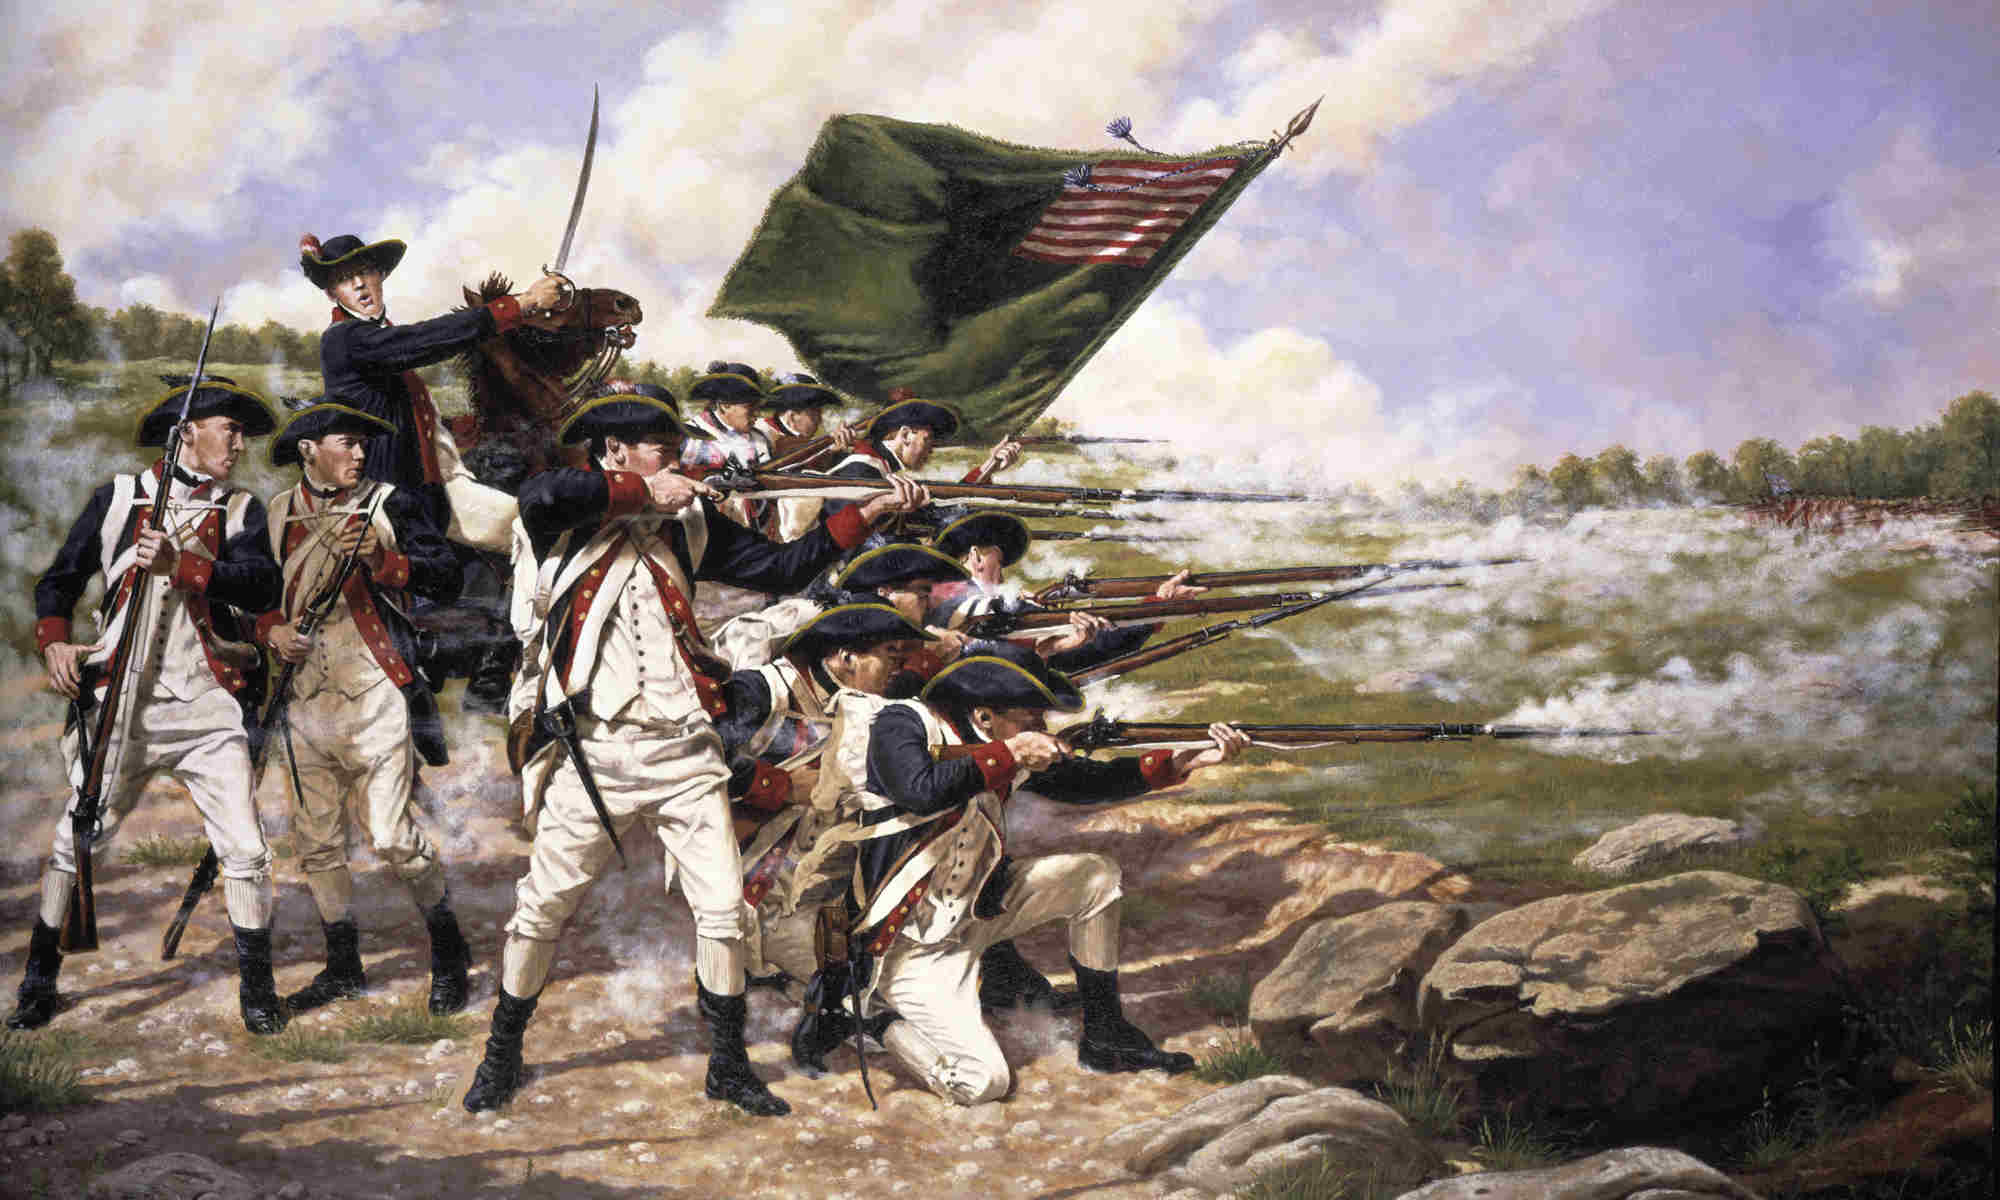 Battle of Long Island